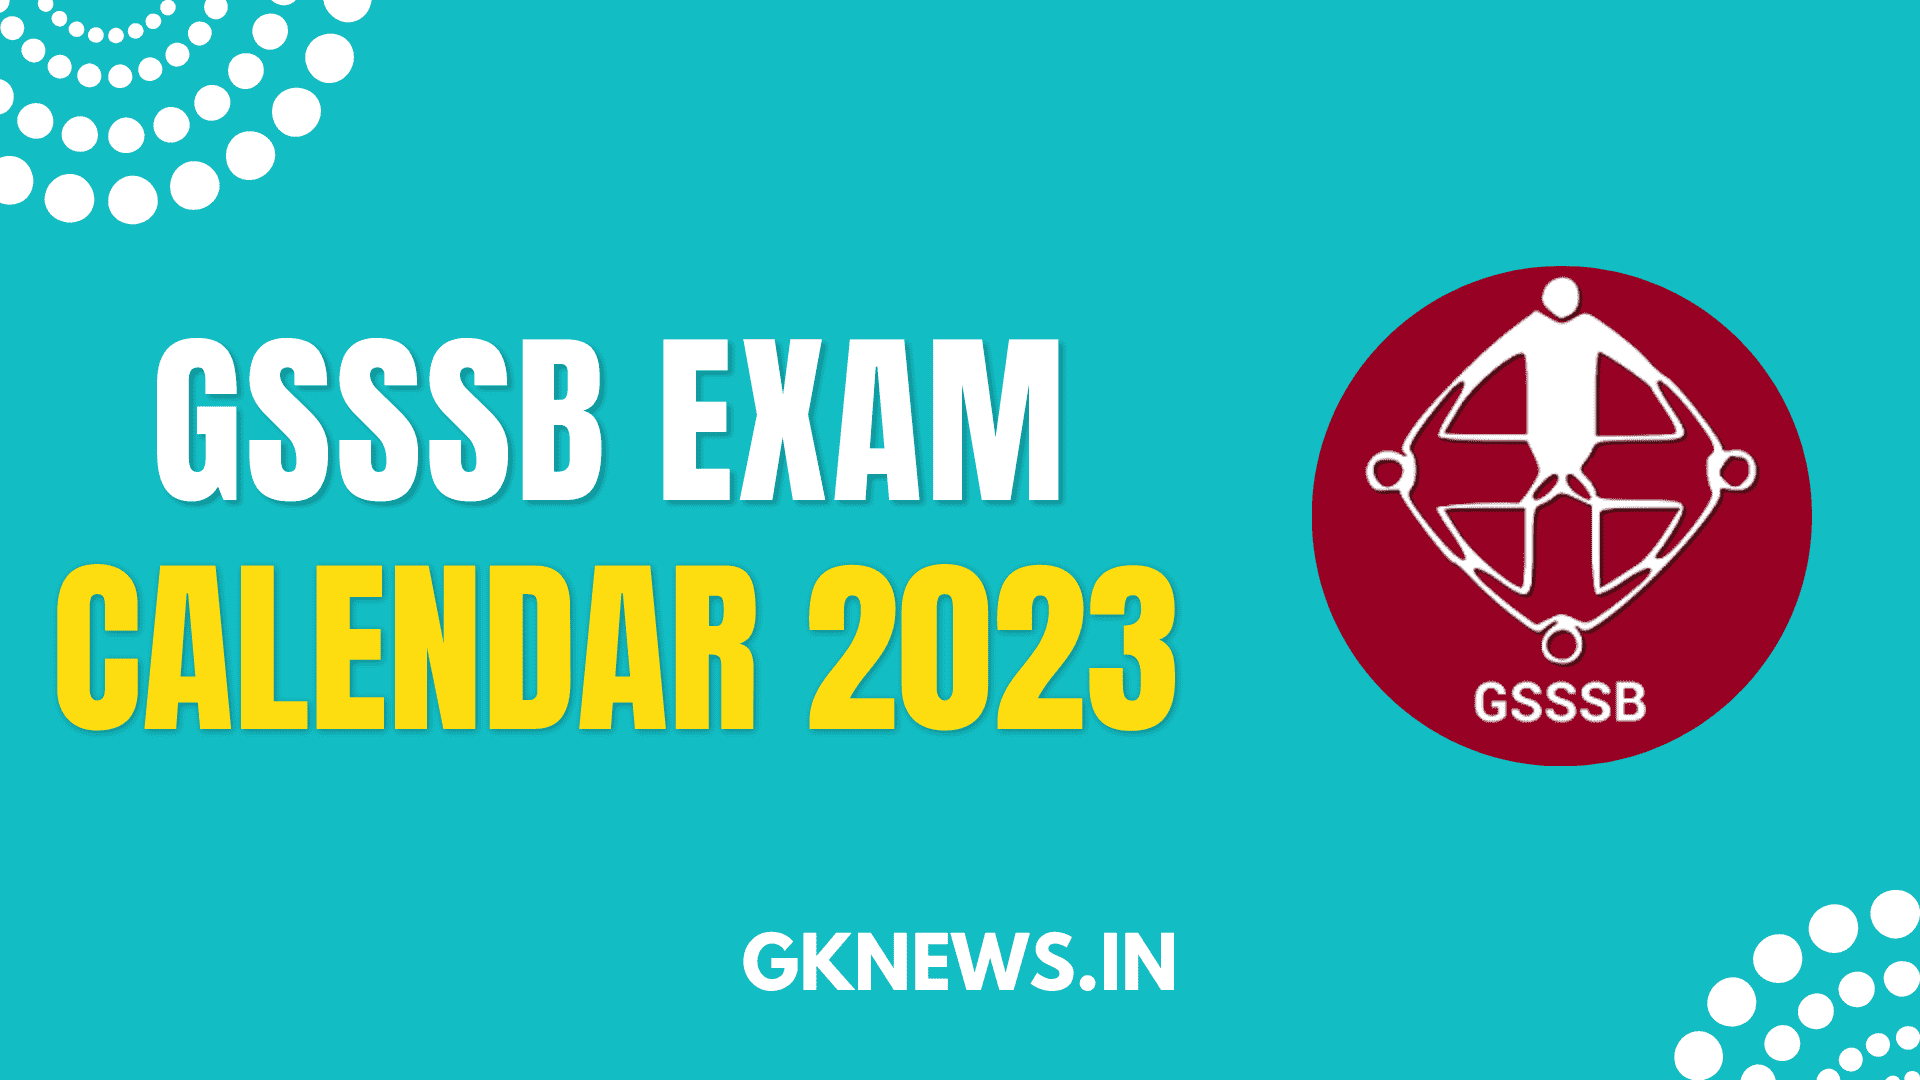 GSSSB Exam Calendar 2023